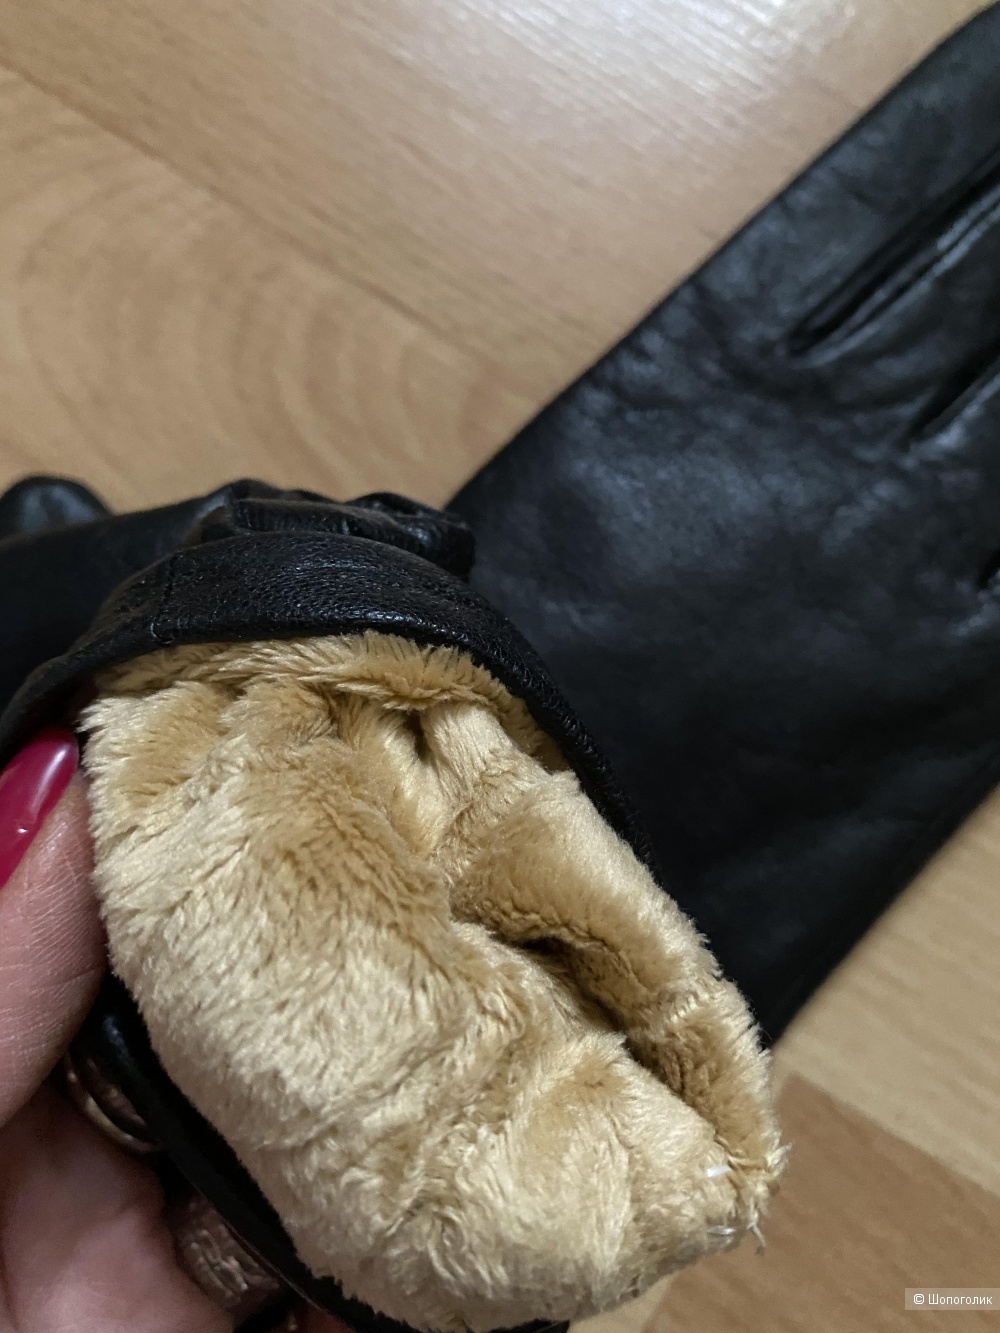 Кожаные перчатки Rumanachi 7,5 размер